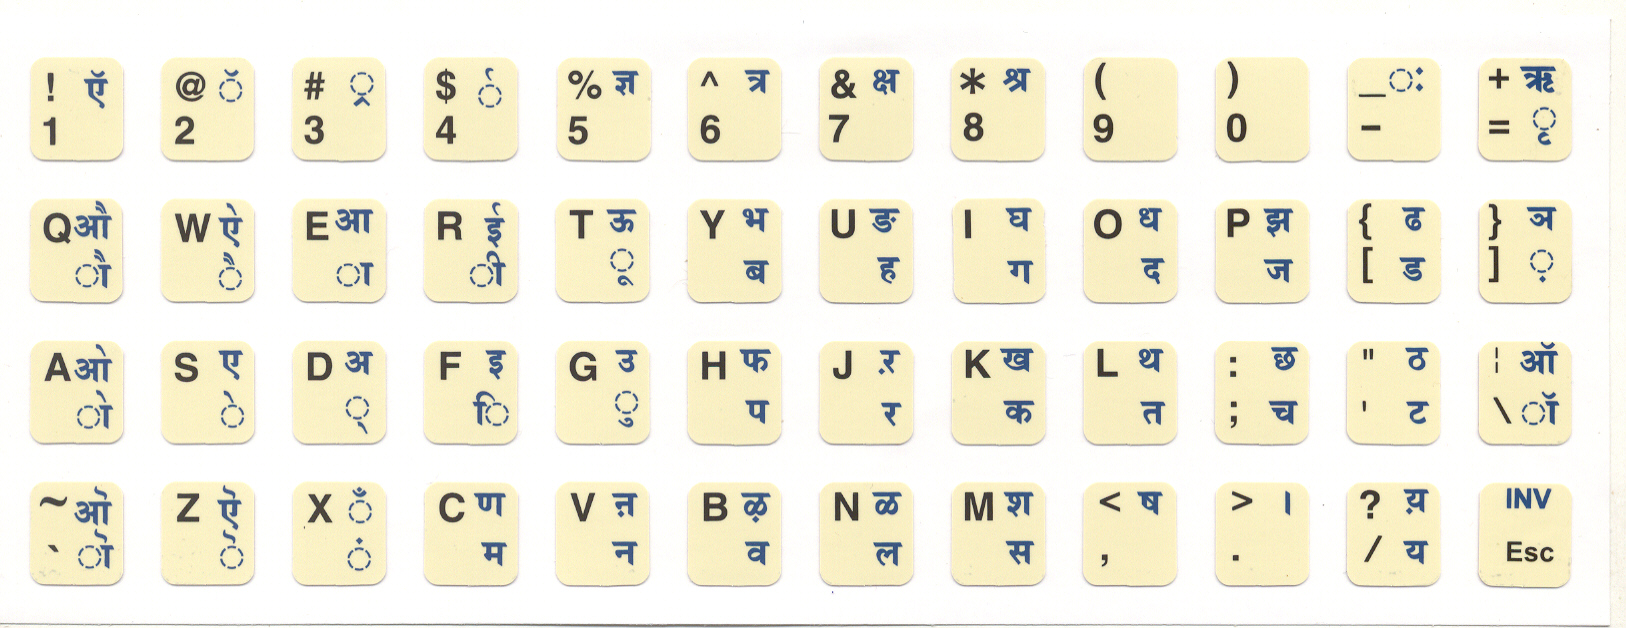 Inscript keyboard layout